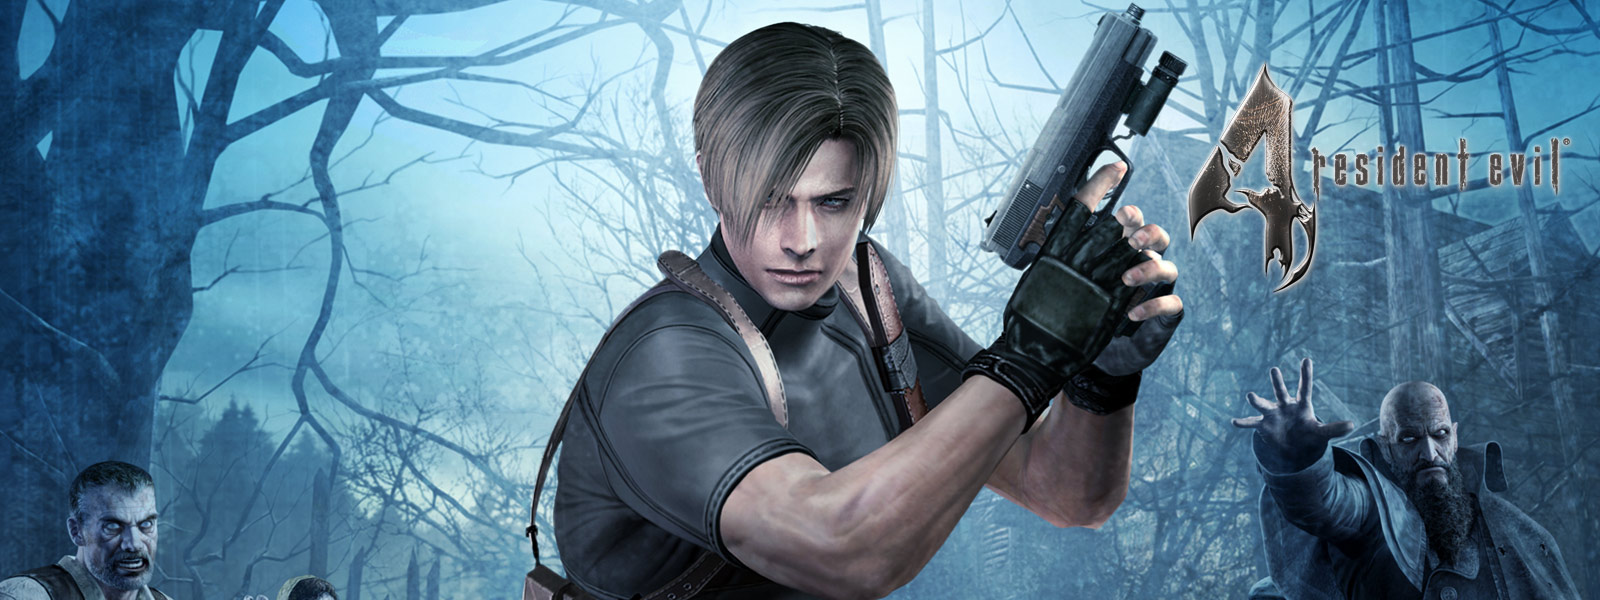 Resident Evil 4, un personaje sosteniendo una pistola en un bosque oscuro rodeado de zombis